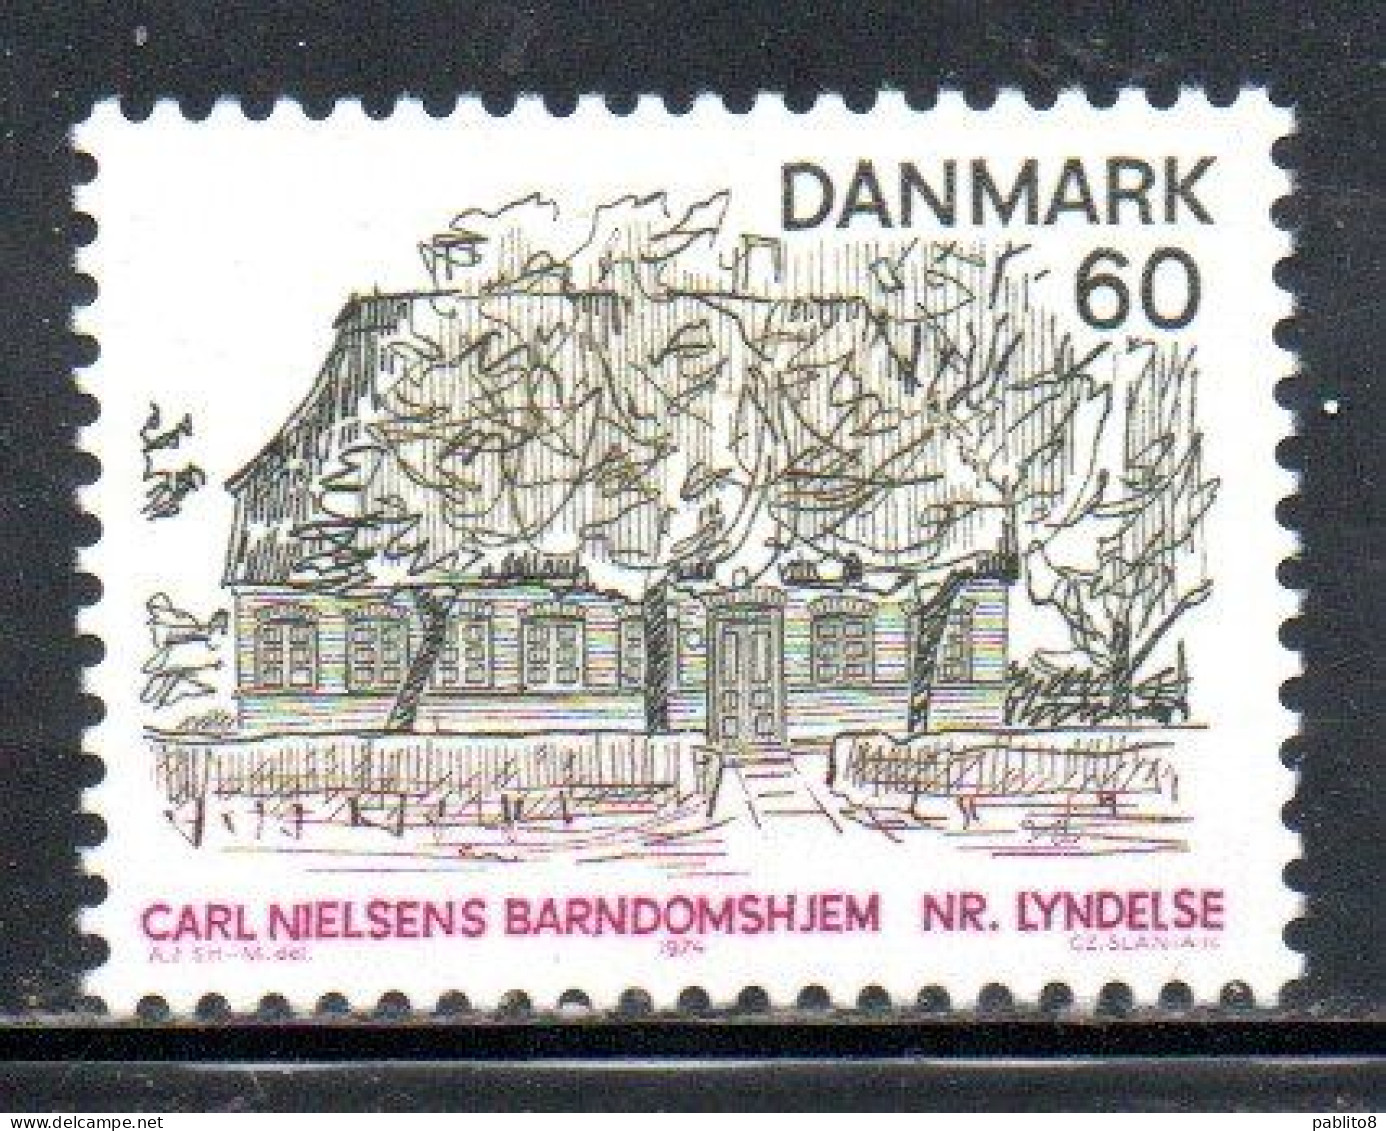 DANEMARK DANMARK DENMARK DANIMARCA 1974 VIEWS NORRE LYNDELSE CARL NIELSEN'S CHILDHOOD HOME 60o MNH - Neufs